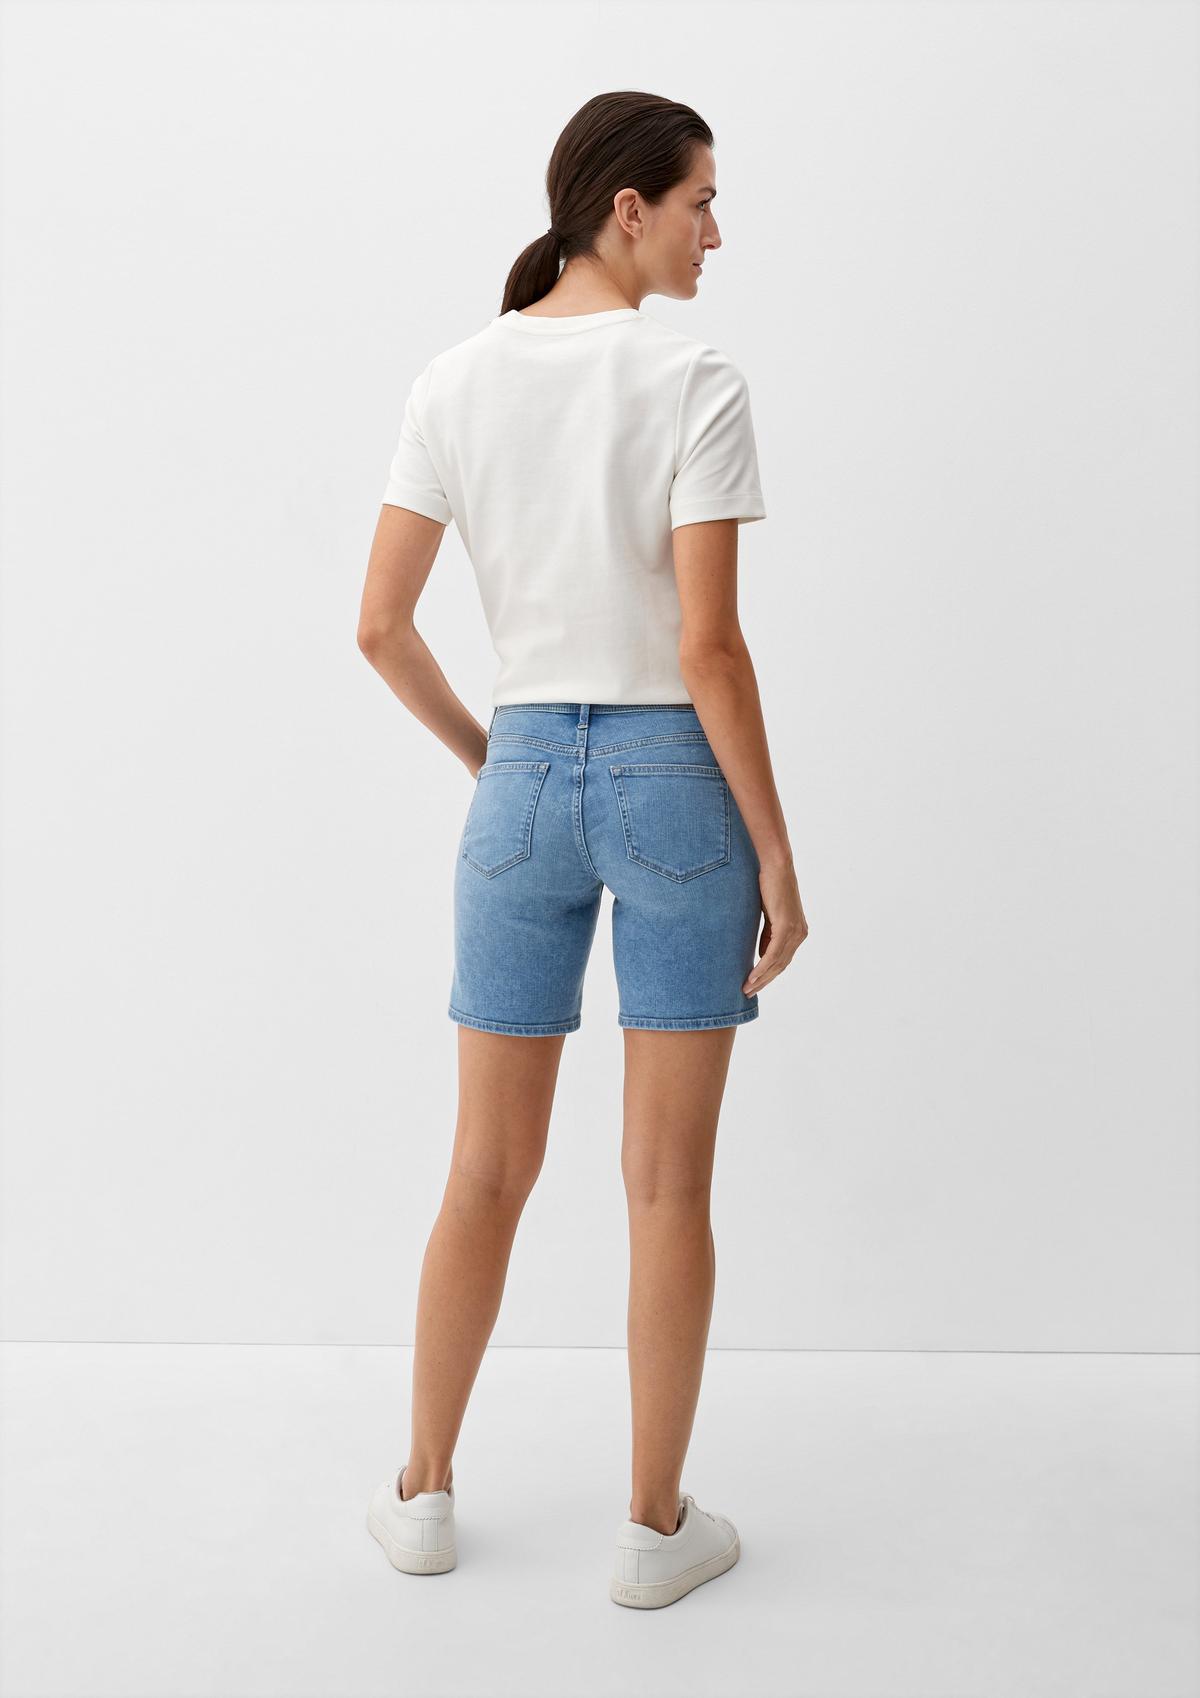 Slim fit: Bermuda shorts with saddle yoke - light blue